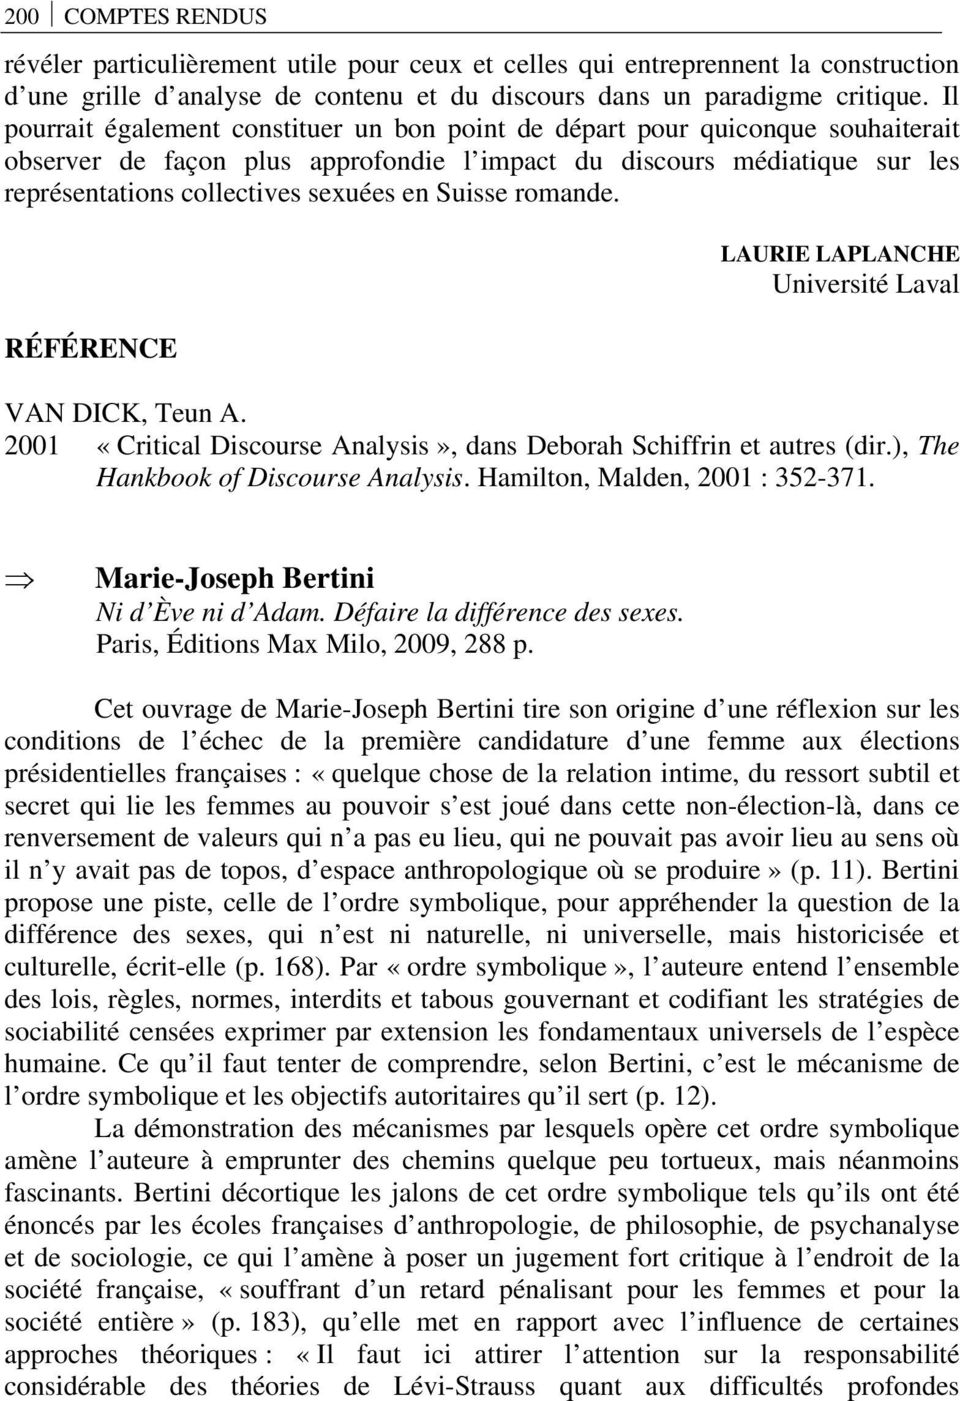 Suisse romande. RÉFÉRENCE LAURIE LAPLANCHE Université Laval VAN DICK, Teun A. 2001 «Critical Discourse Analysis», dans Deborah Schiffrin et autres (dir.), The Hankbook of Discourse Analysis.